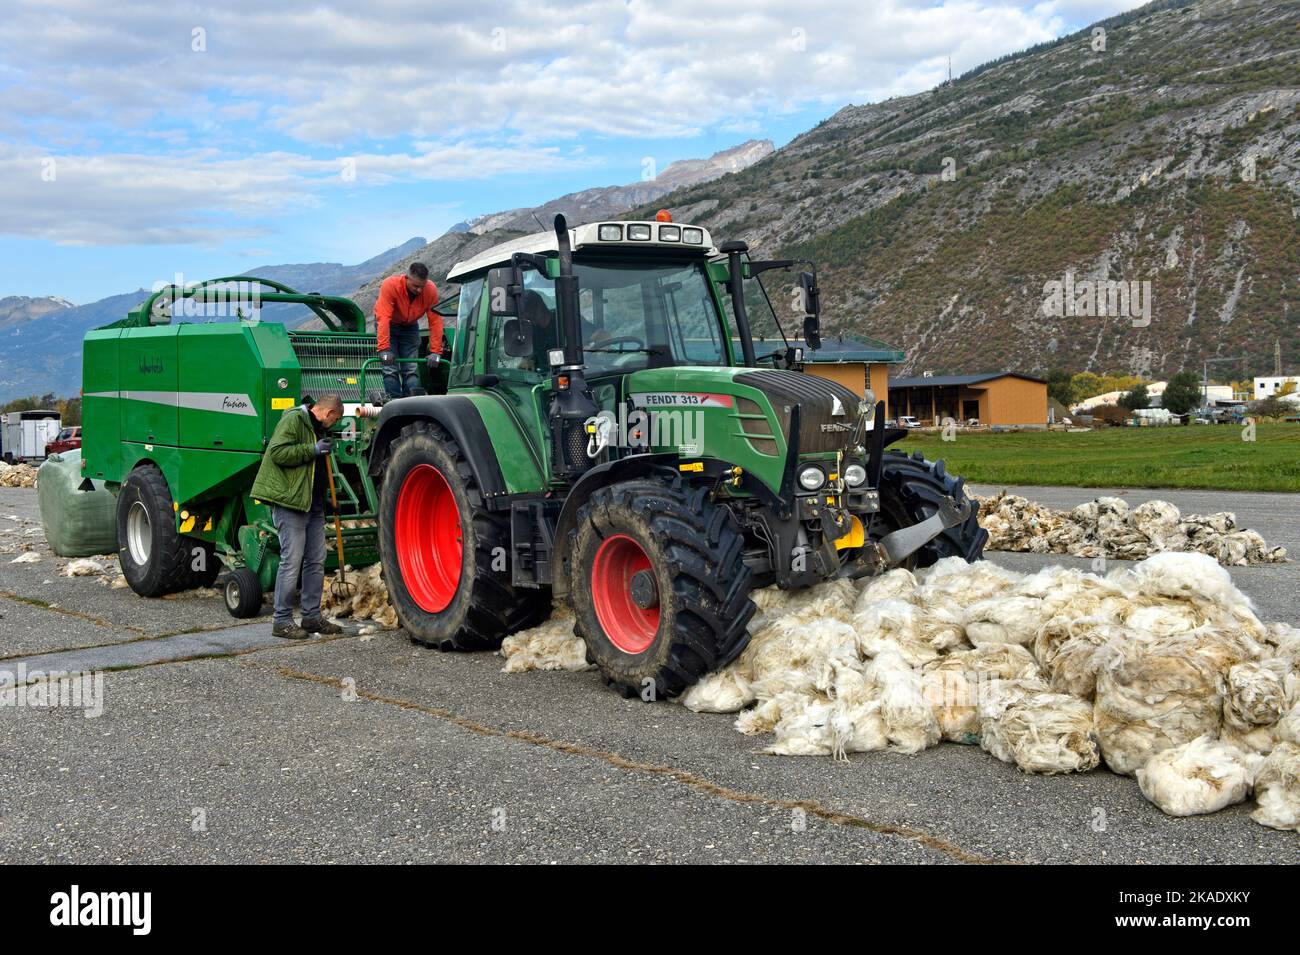 Traktor mit Rundballenpresse sammelt Schafwolle, Swisswool Sammelstelle für Schurwolle von Walliser Schwarznasenschafen, Turtmann, Wallis,Schweiz Stockfoto